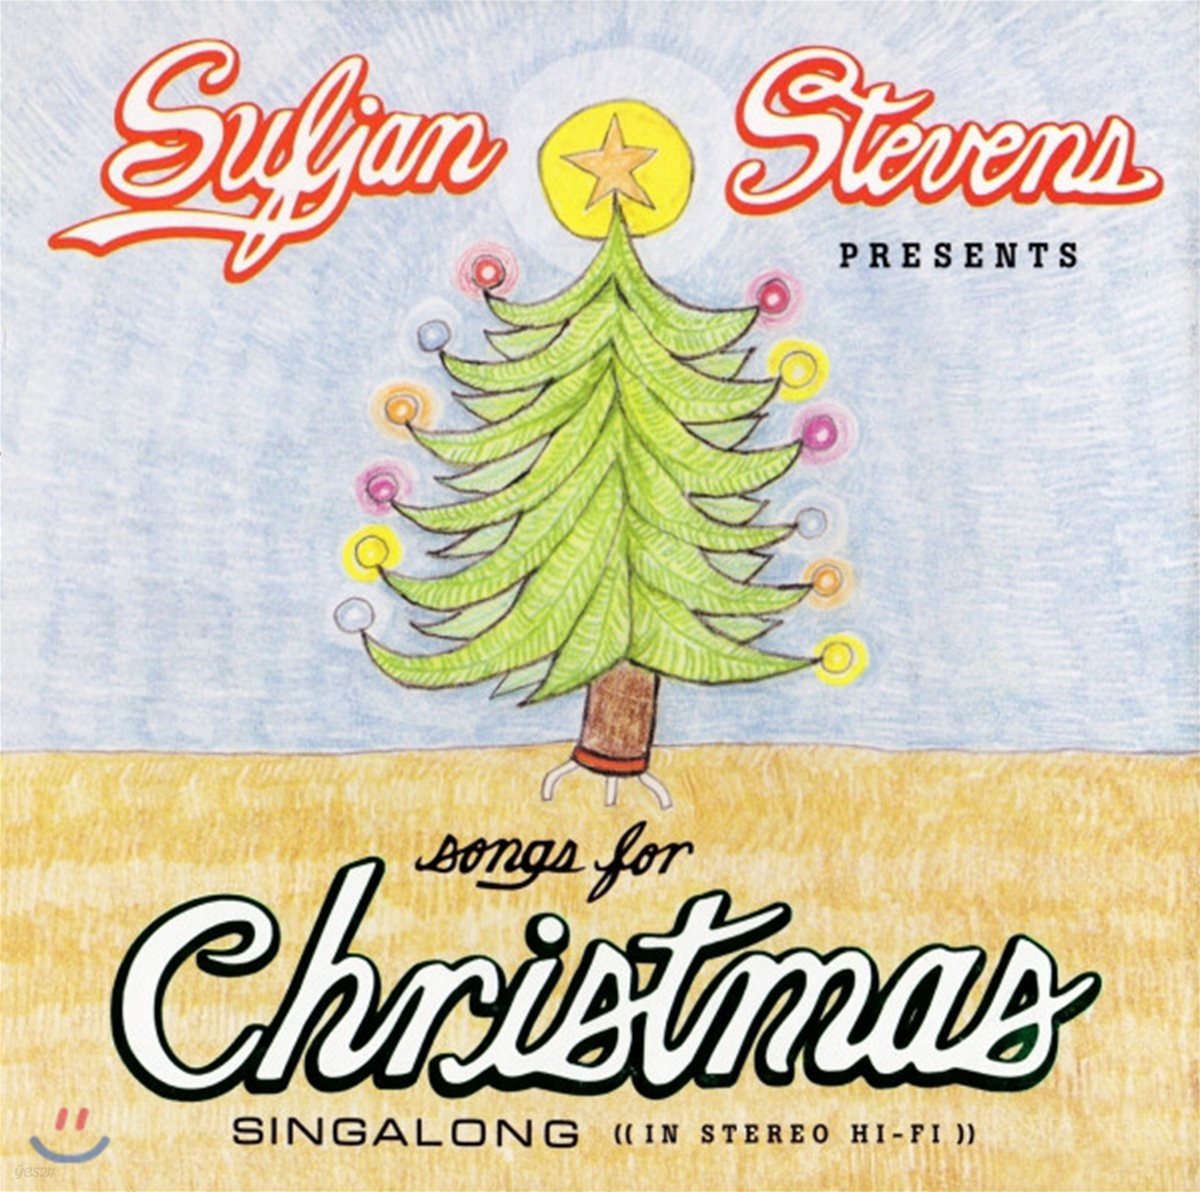 Sufjan Stevens - Songs For Christmas 수프얀 스티븐스 크리스마스 앨범